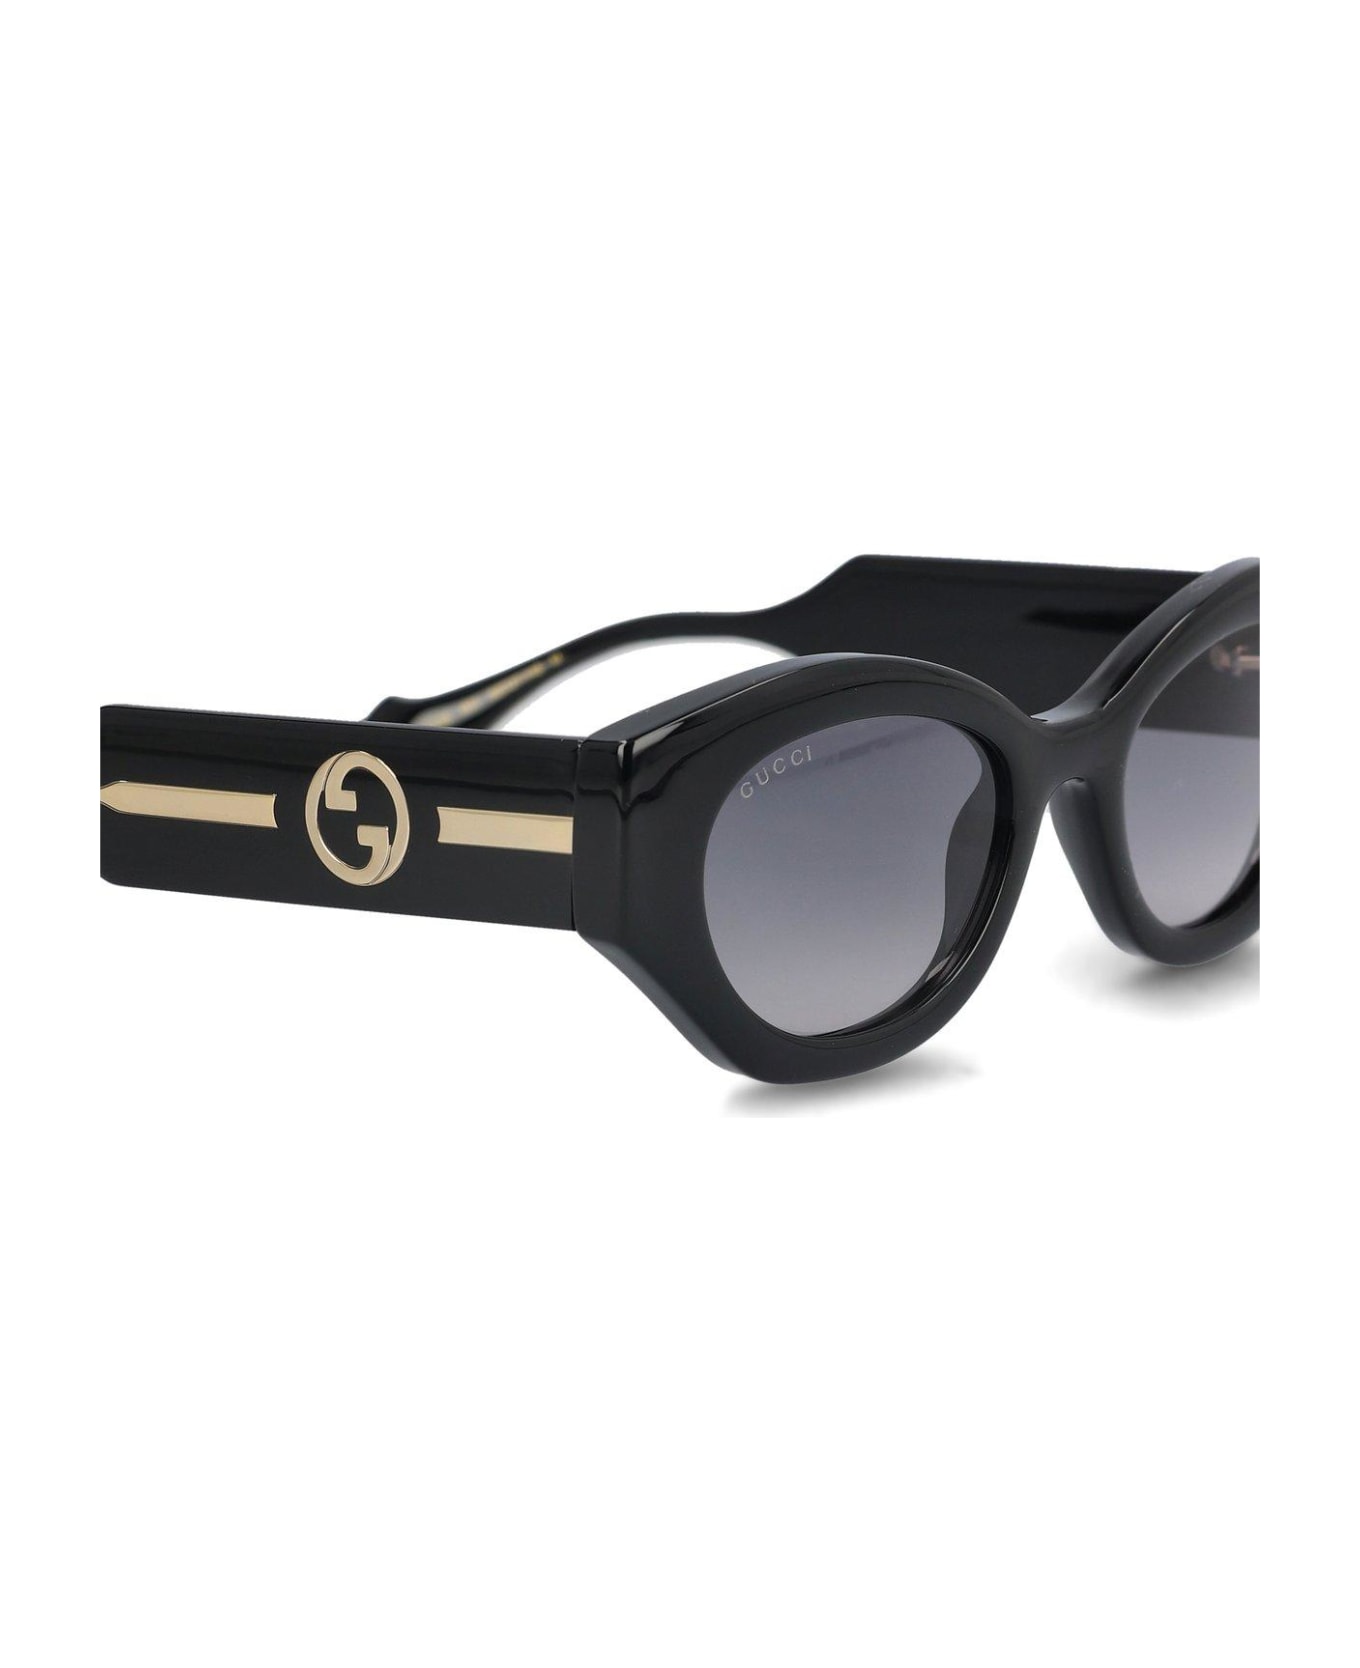 Gucci Eyewear Oval Frame Sunglasses - Black Crystal Grey